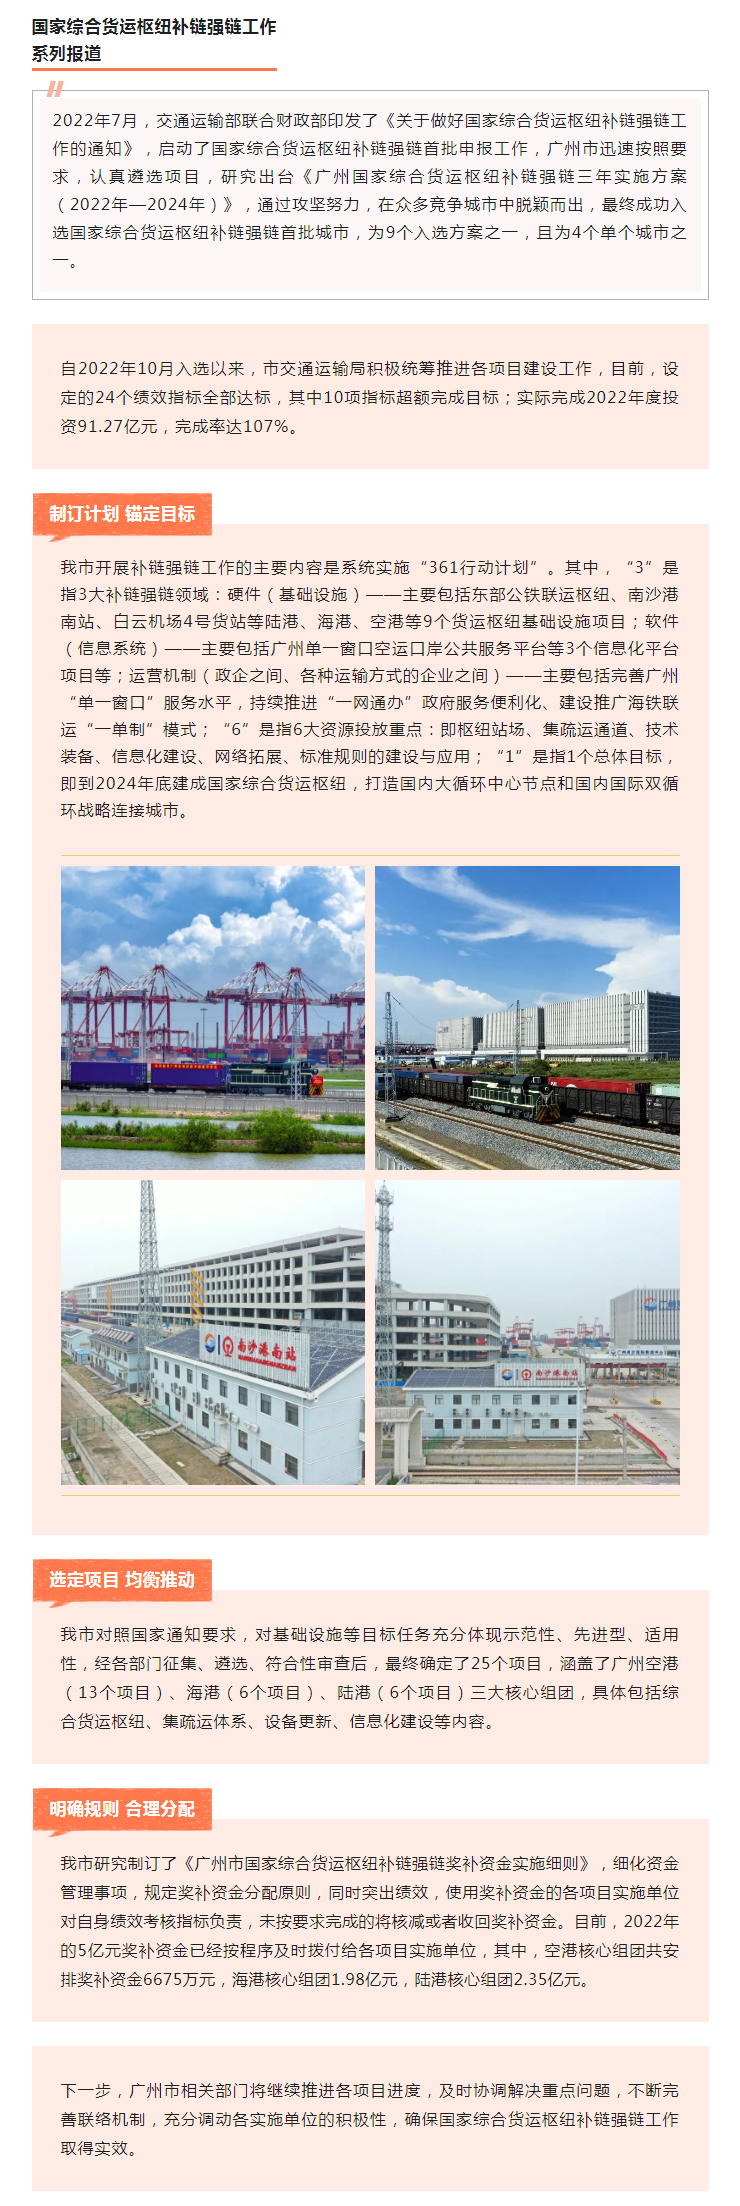 广州成功入选国家综合货运枢纽补链强链首批城市，建设工作正如火如荼.png